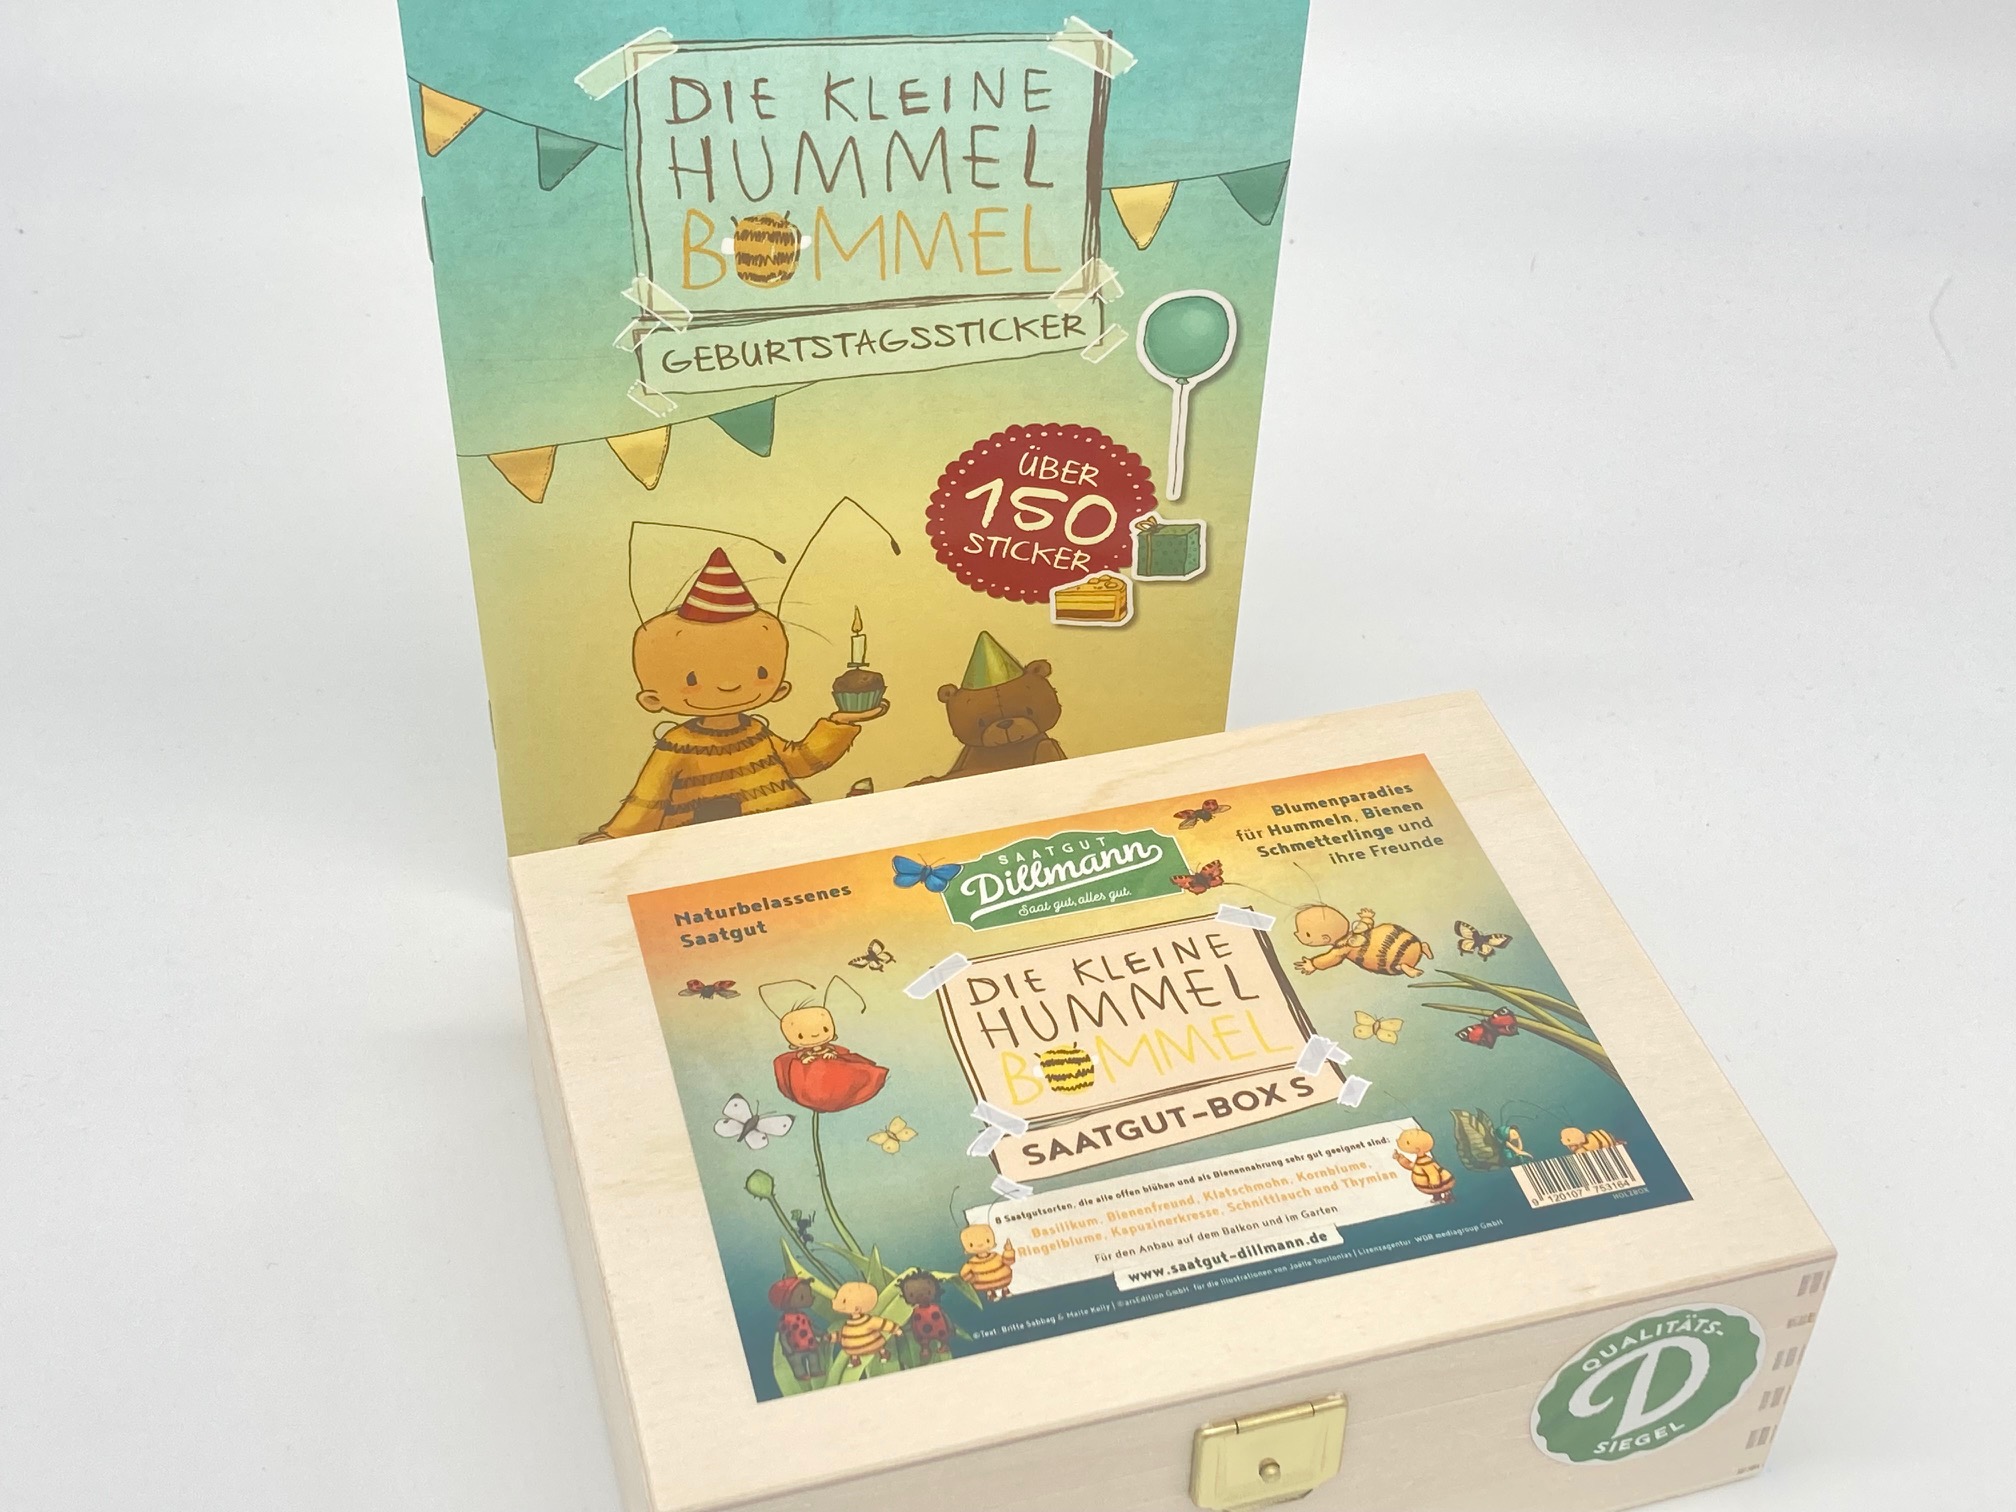 Hummel Bommel Saatgut-Box S (Holzbox) mit Geburtstagsstickern (Stickerbuch)